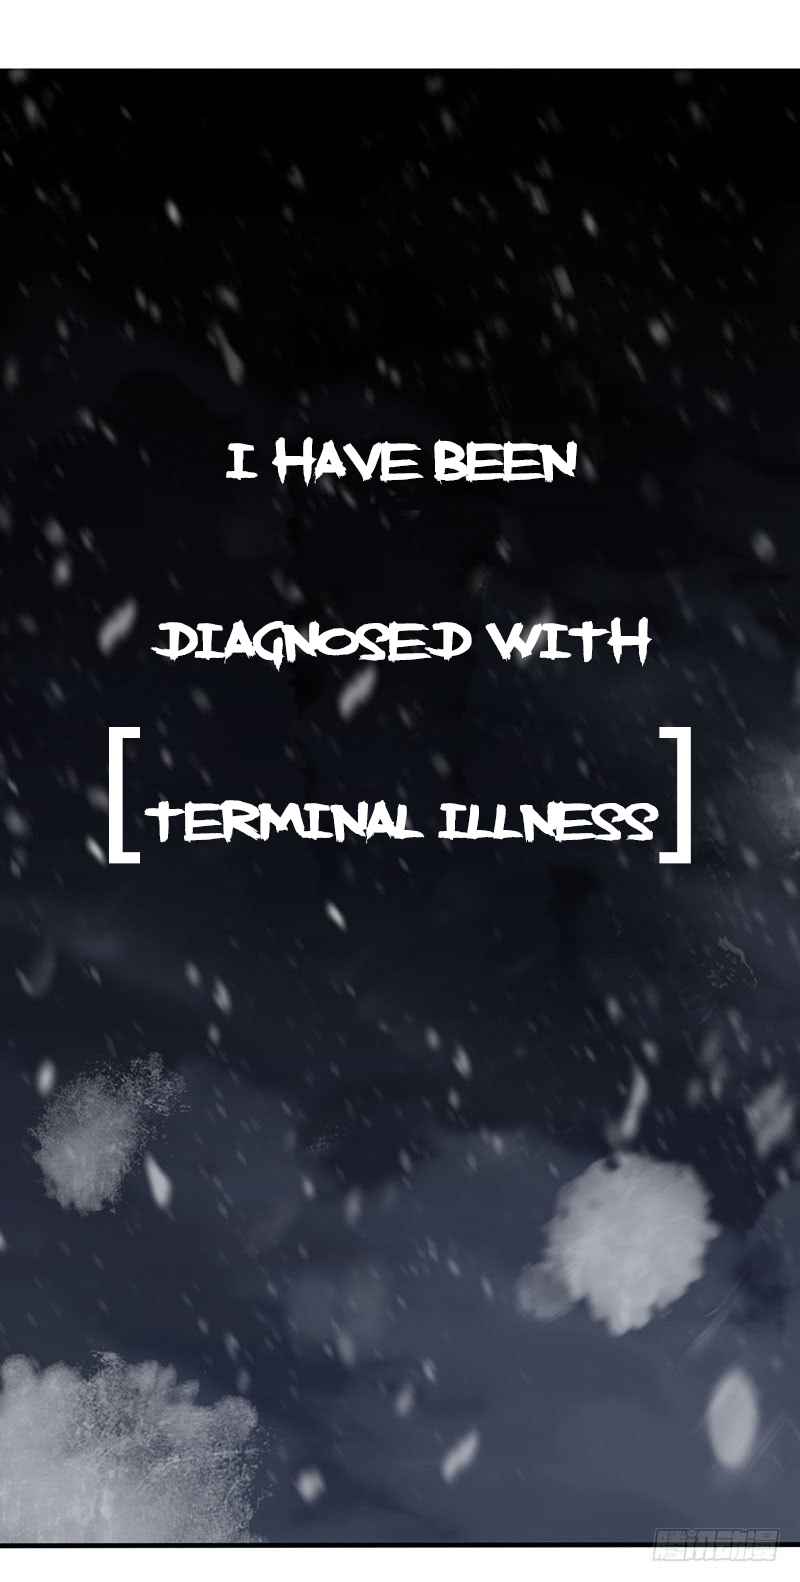 Disease Ch. 1 Terminal Illness